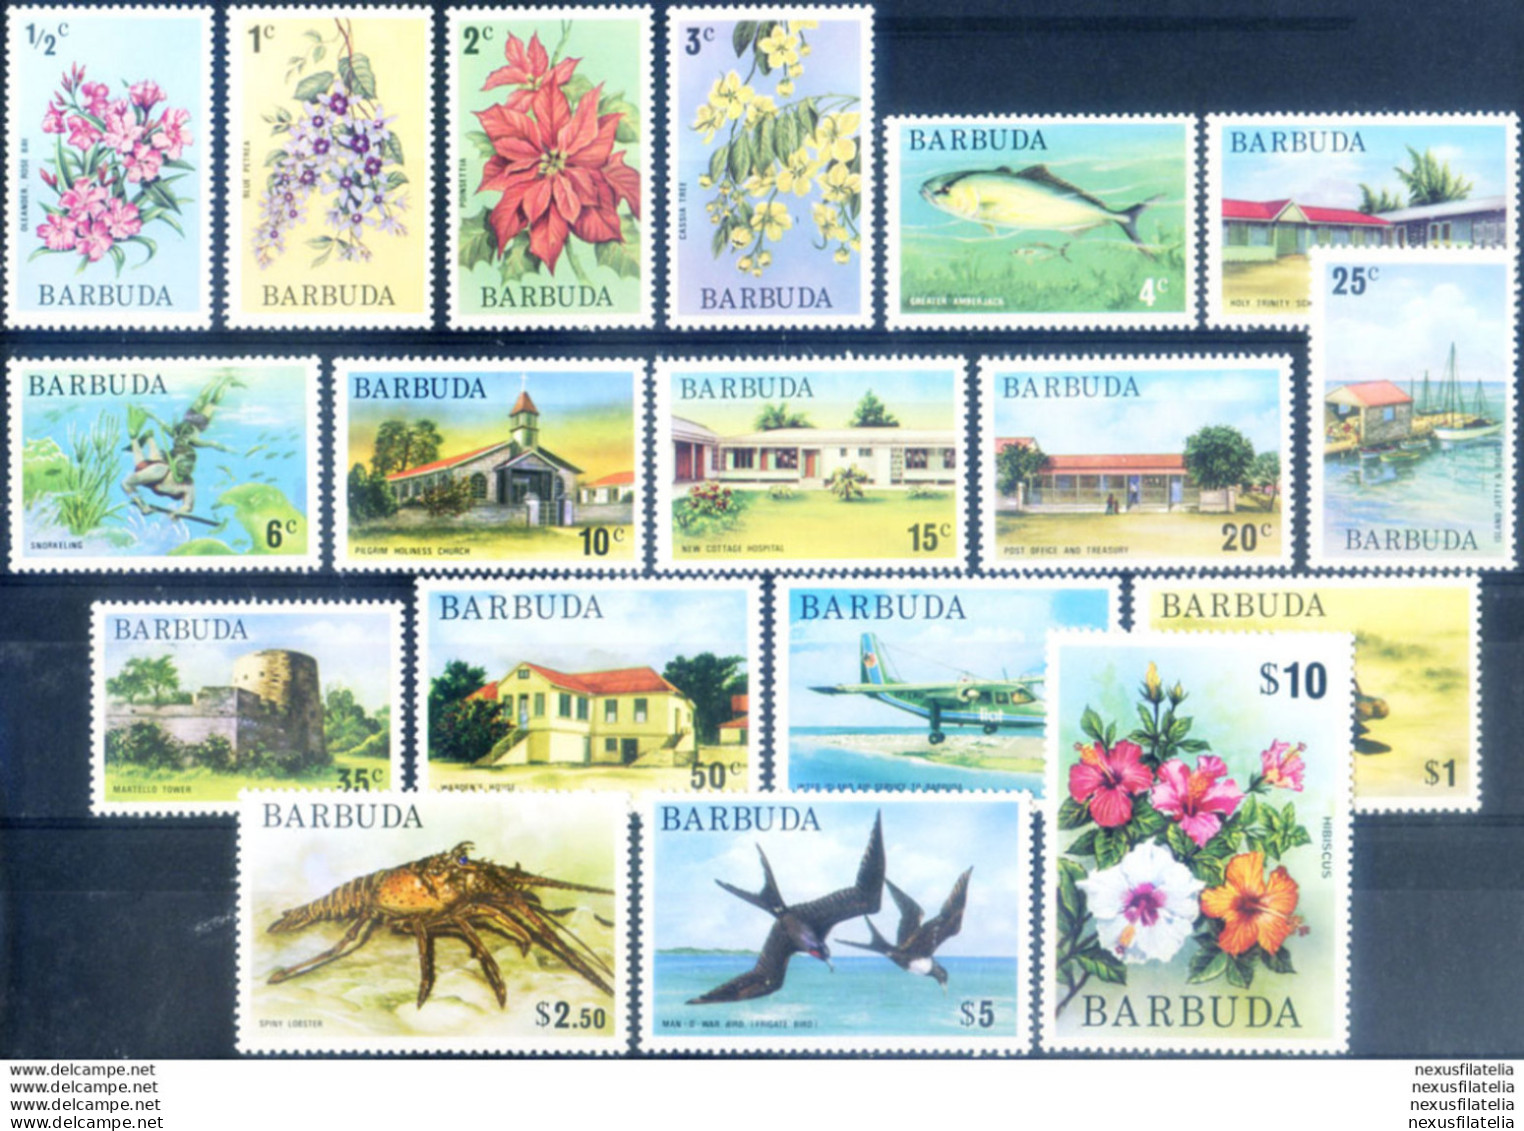 Definitiva. Pittorica 1974-1975. - Antigua Und Barbuda (1981-...)